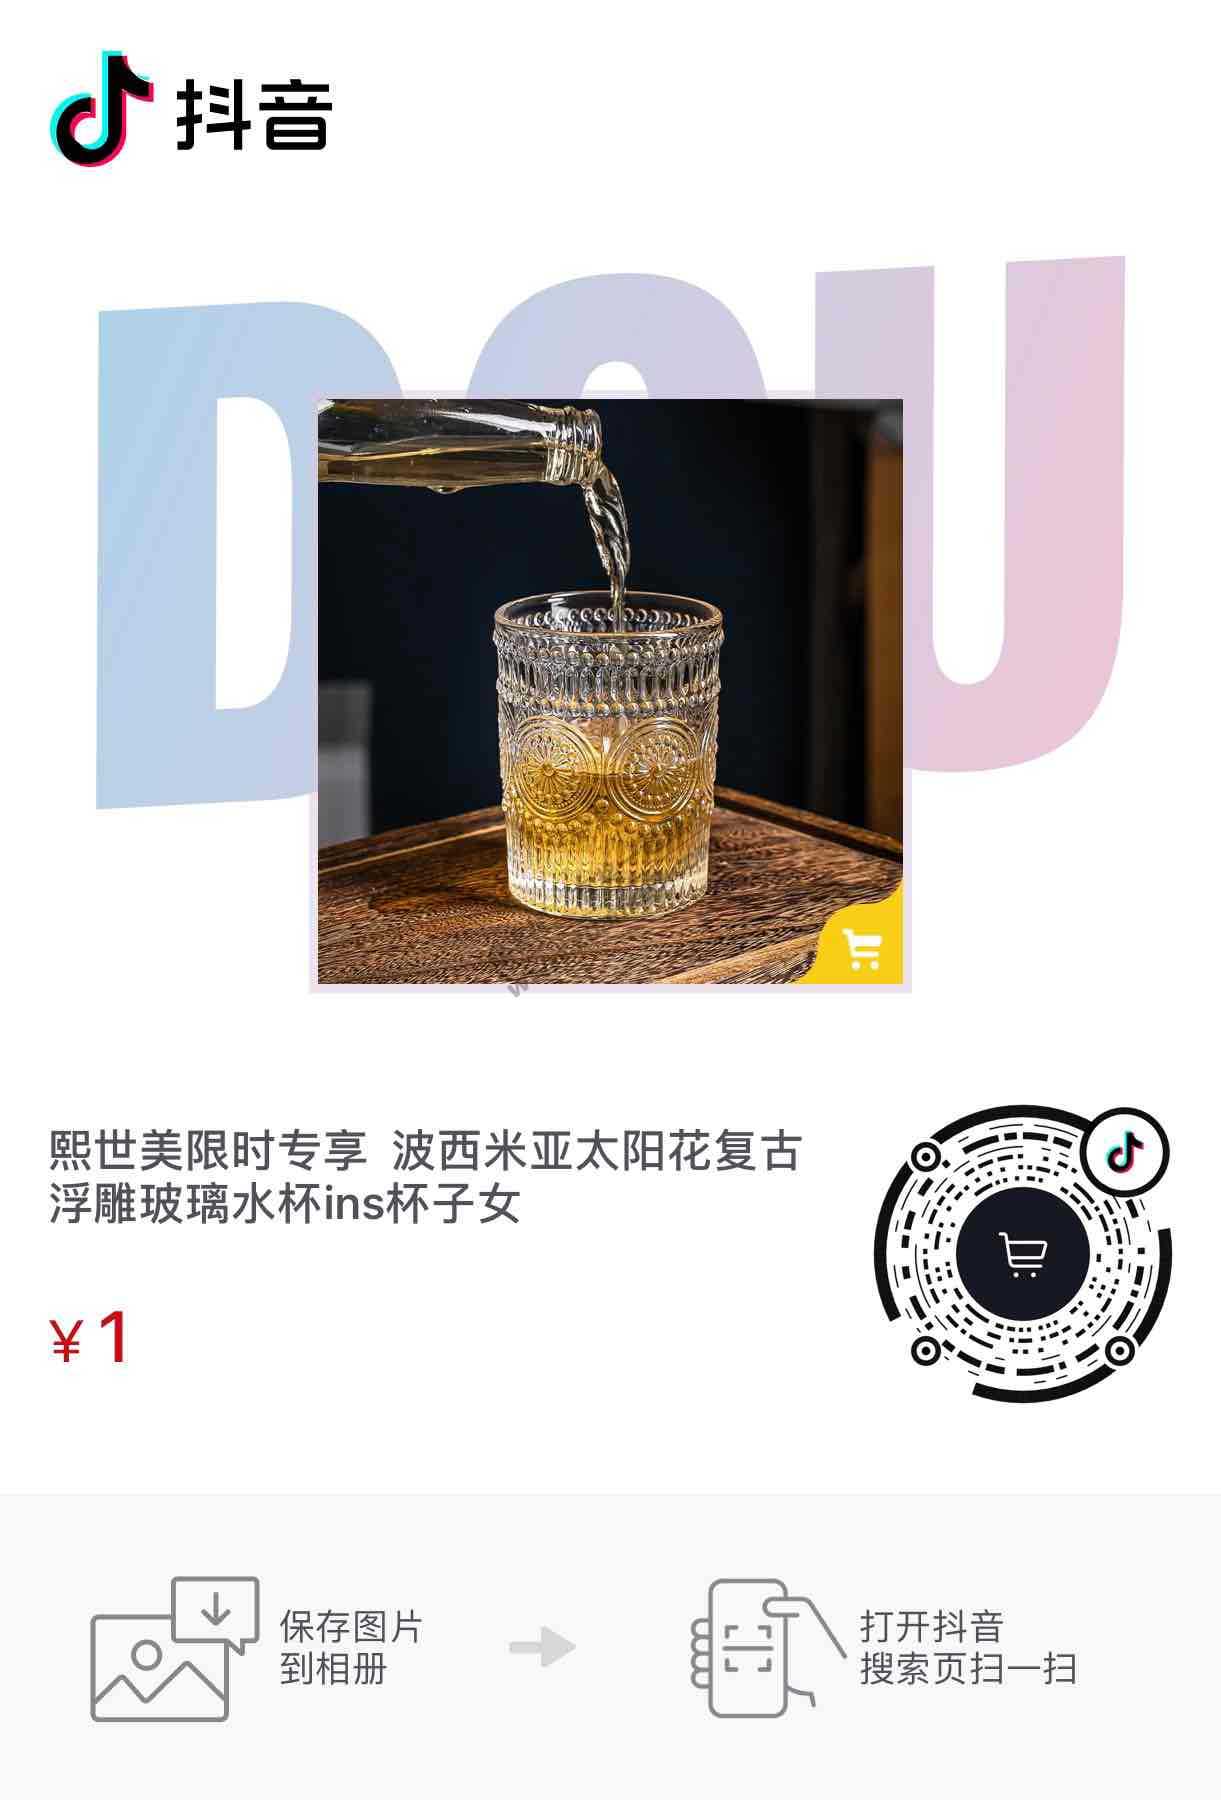 1元2个太阳杯补货-惠小助(52huixz.com)